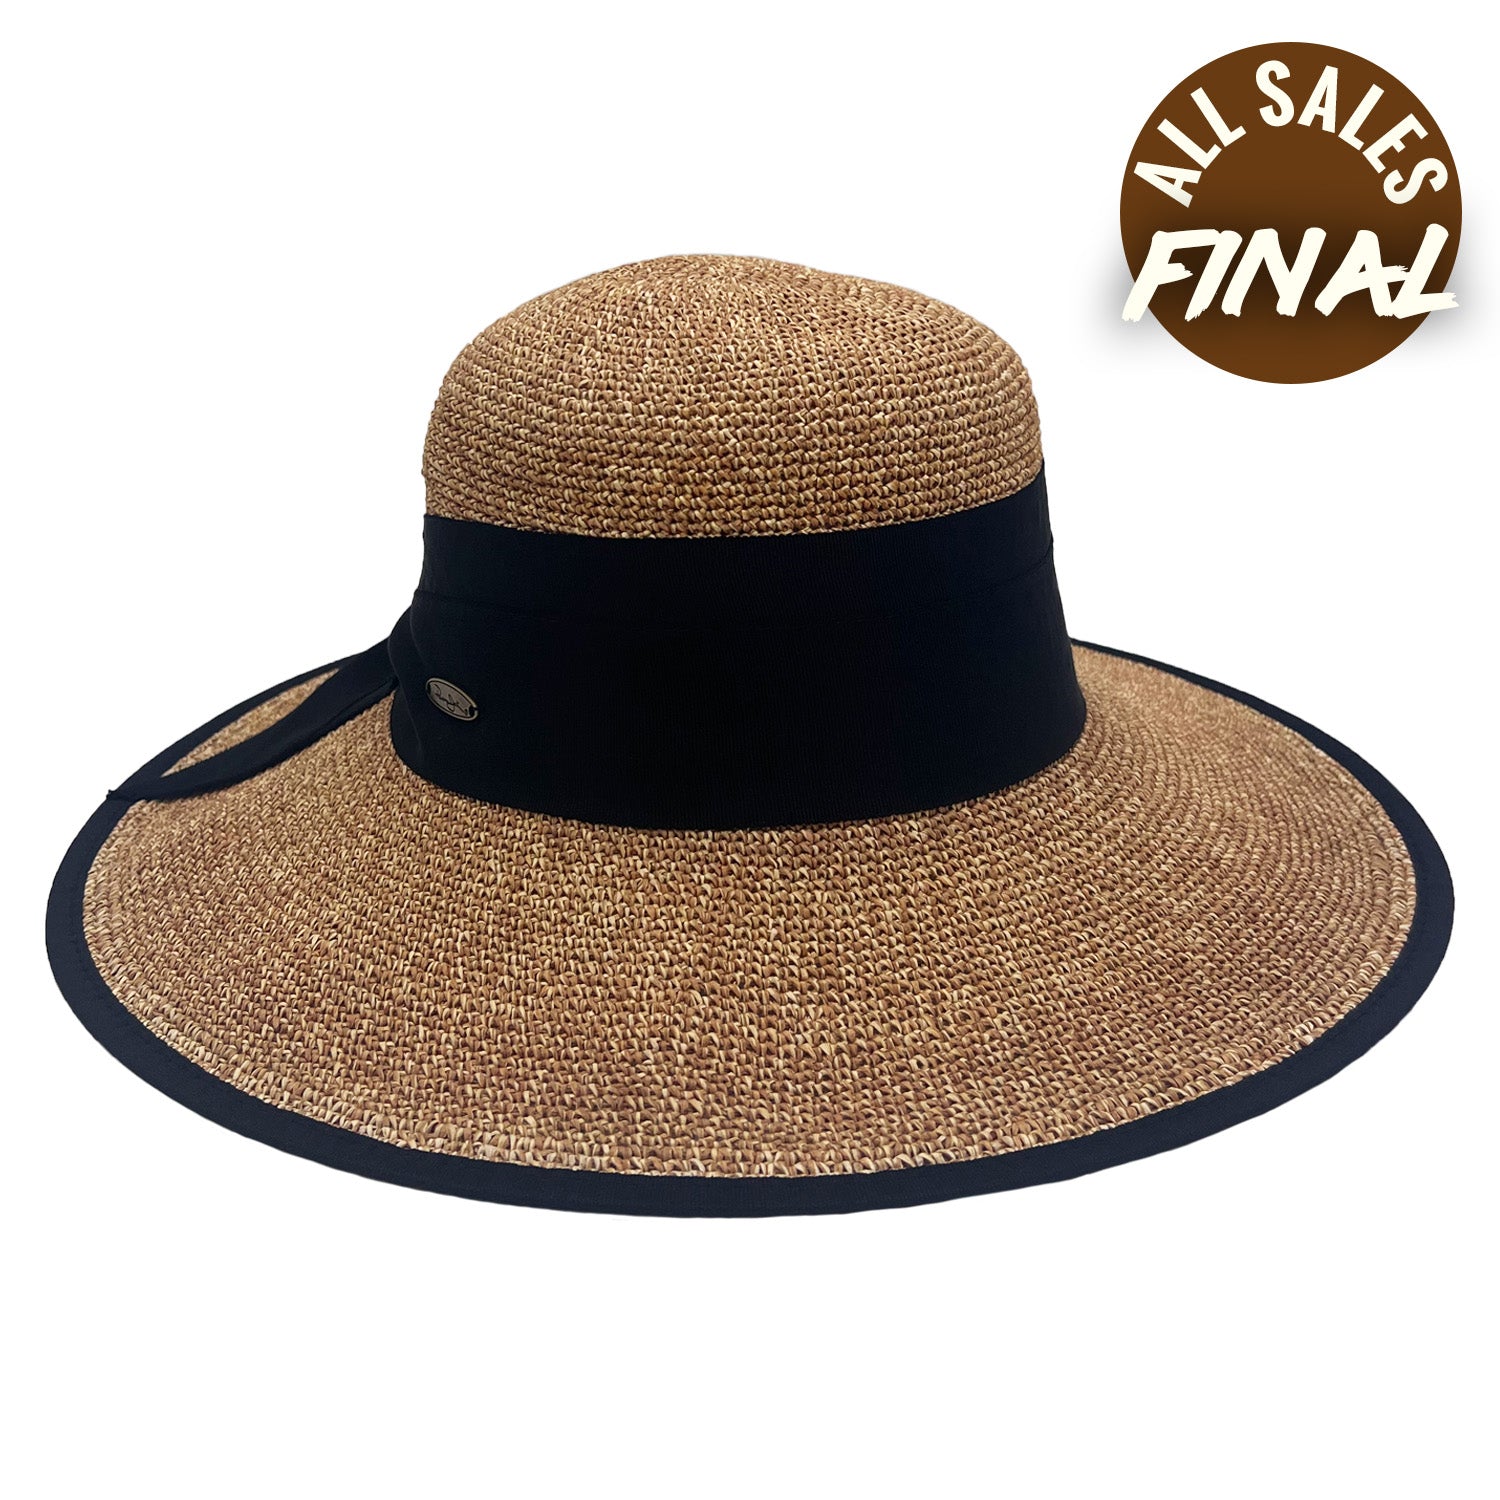 Panama Jack Premium Women's Straw Hat - Natural Paper Braid, 4 Big Brim